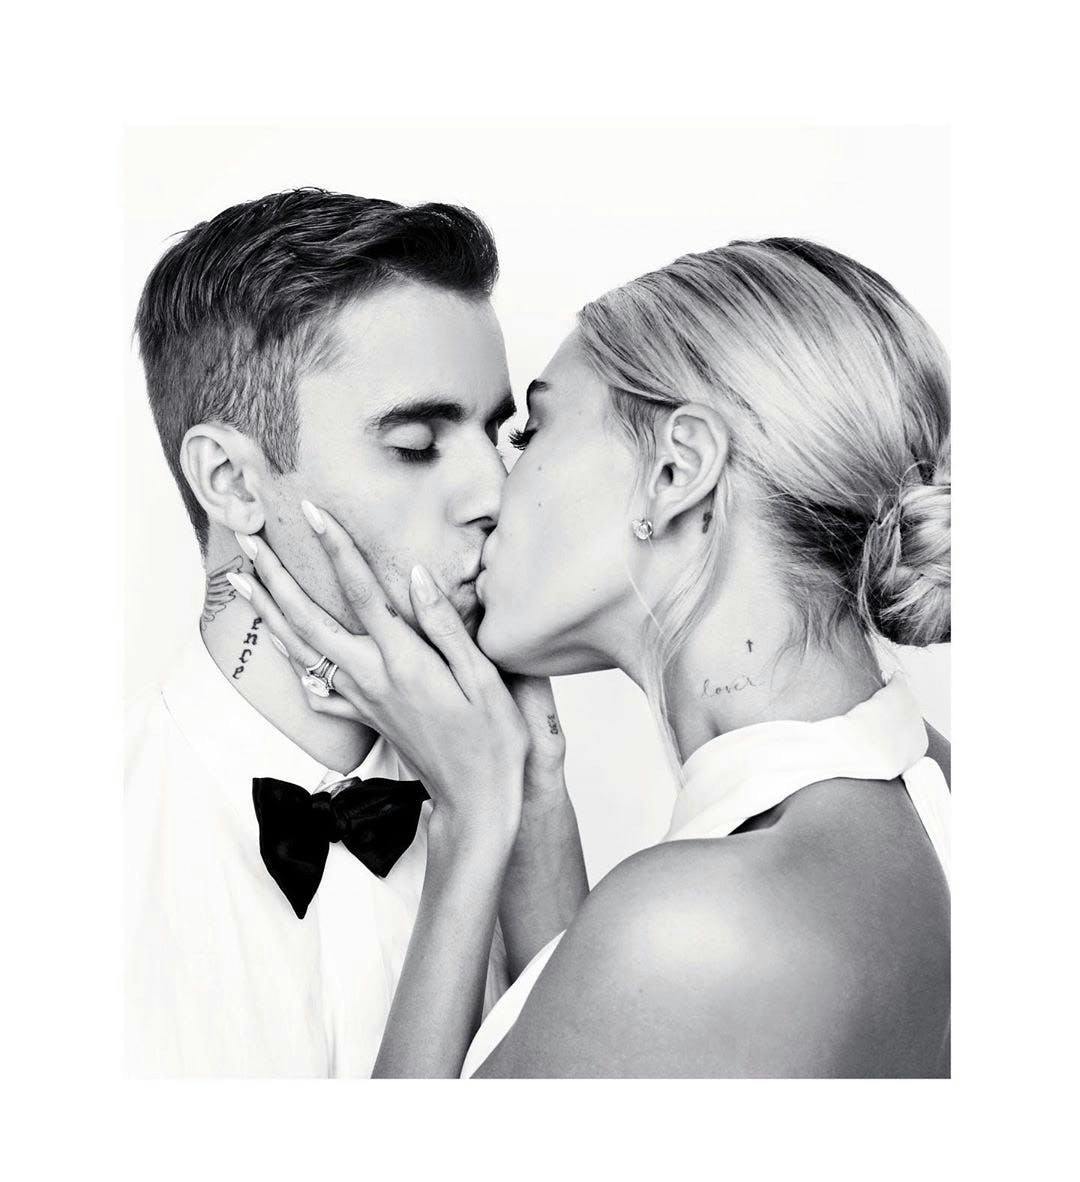 human person clothing apparel kiss kissing bridegroom wedding